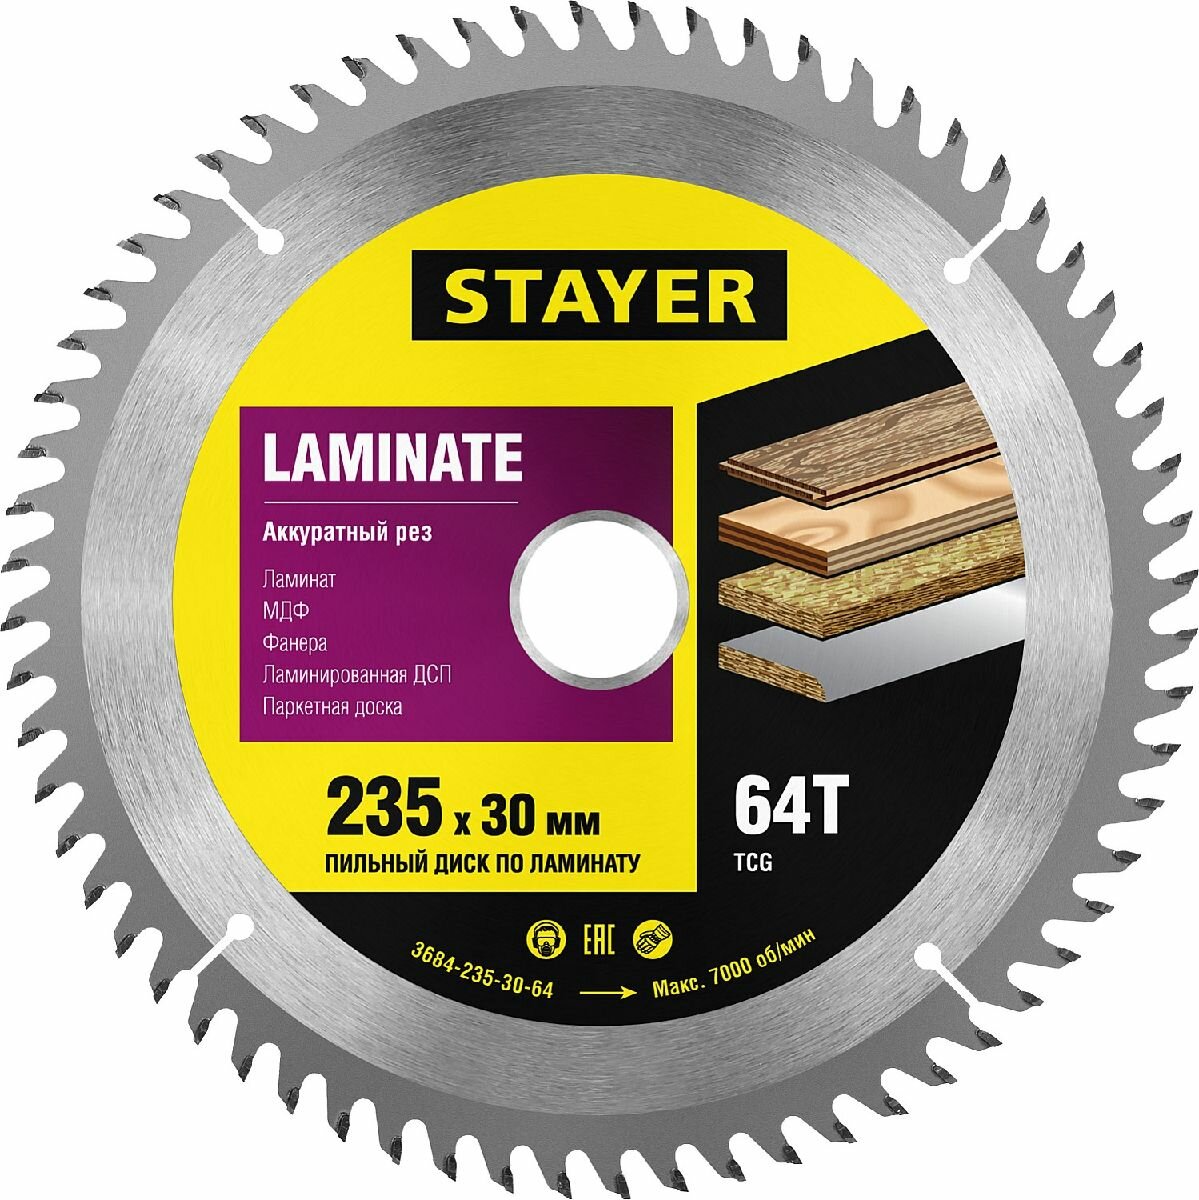 STAYER Laminate 235 x 30мм 64Т, диск пильный по ламинату, аккуратный рез, (3684-235-30-64)